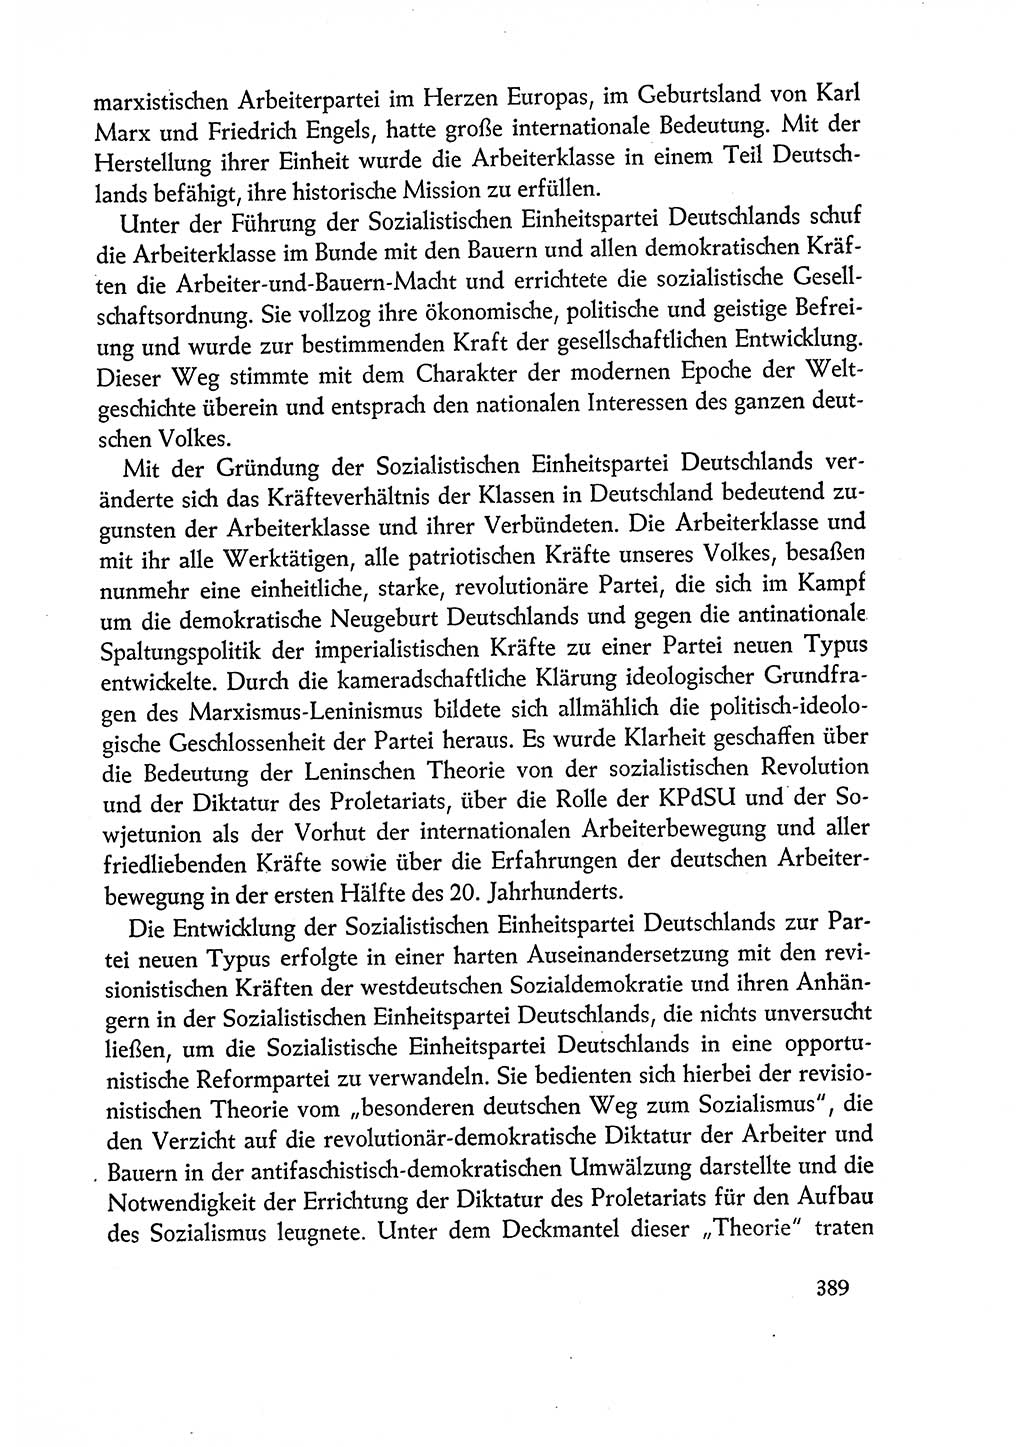 Dokumente der Sozialistischen Einheitspartei Deutschlands (SED) [Deutsche Demokratische Republik (DDR)] 1960-1961, Seite 389 (Dok. SED DDR 1960-1961, S. 389)